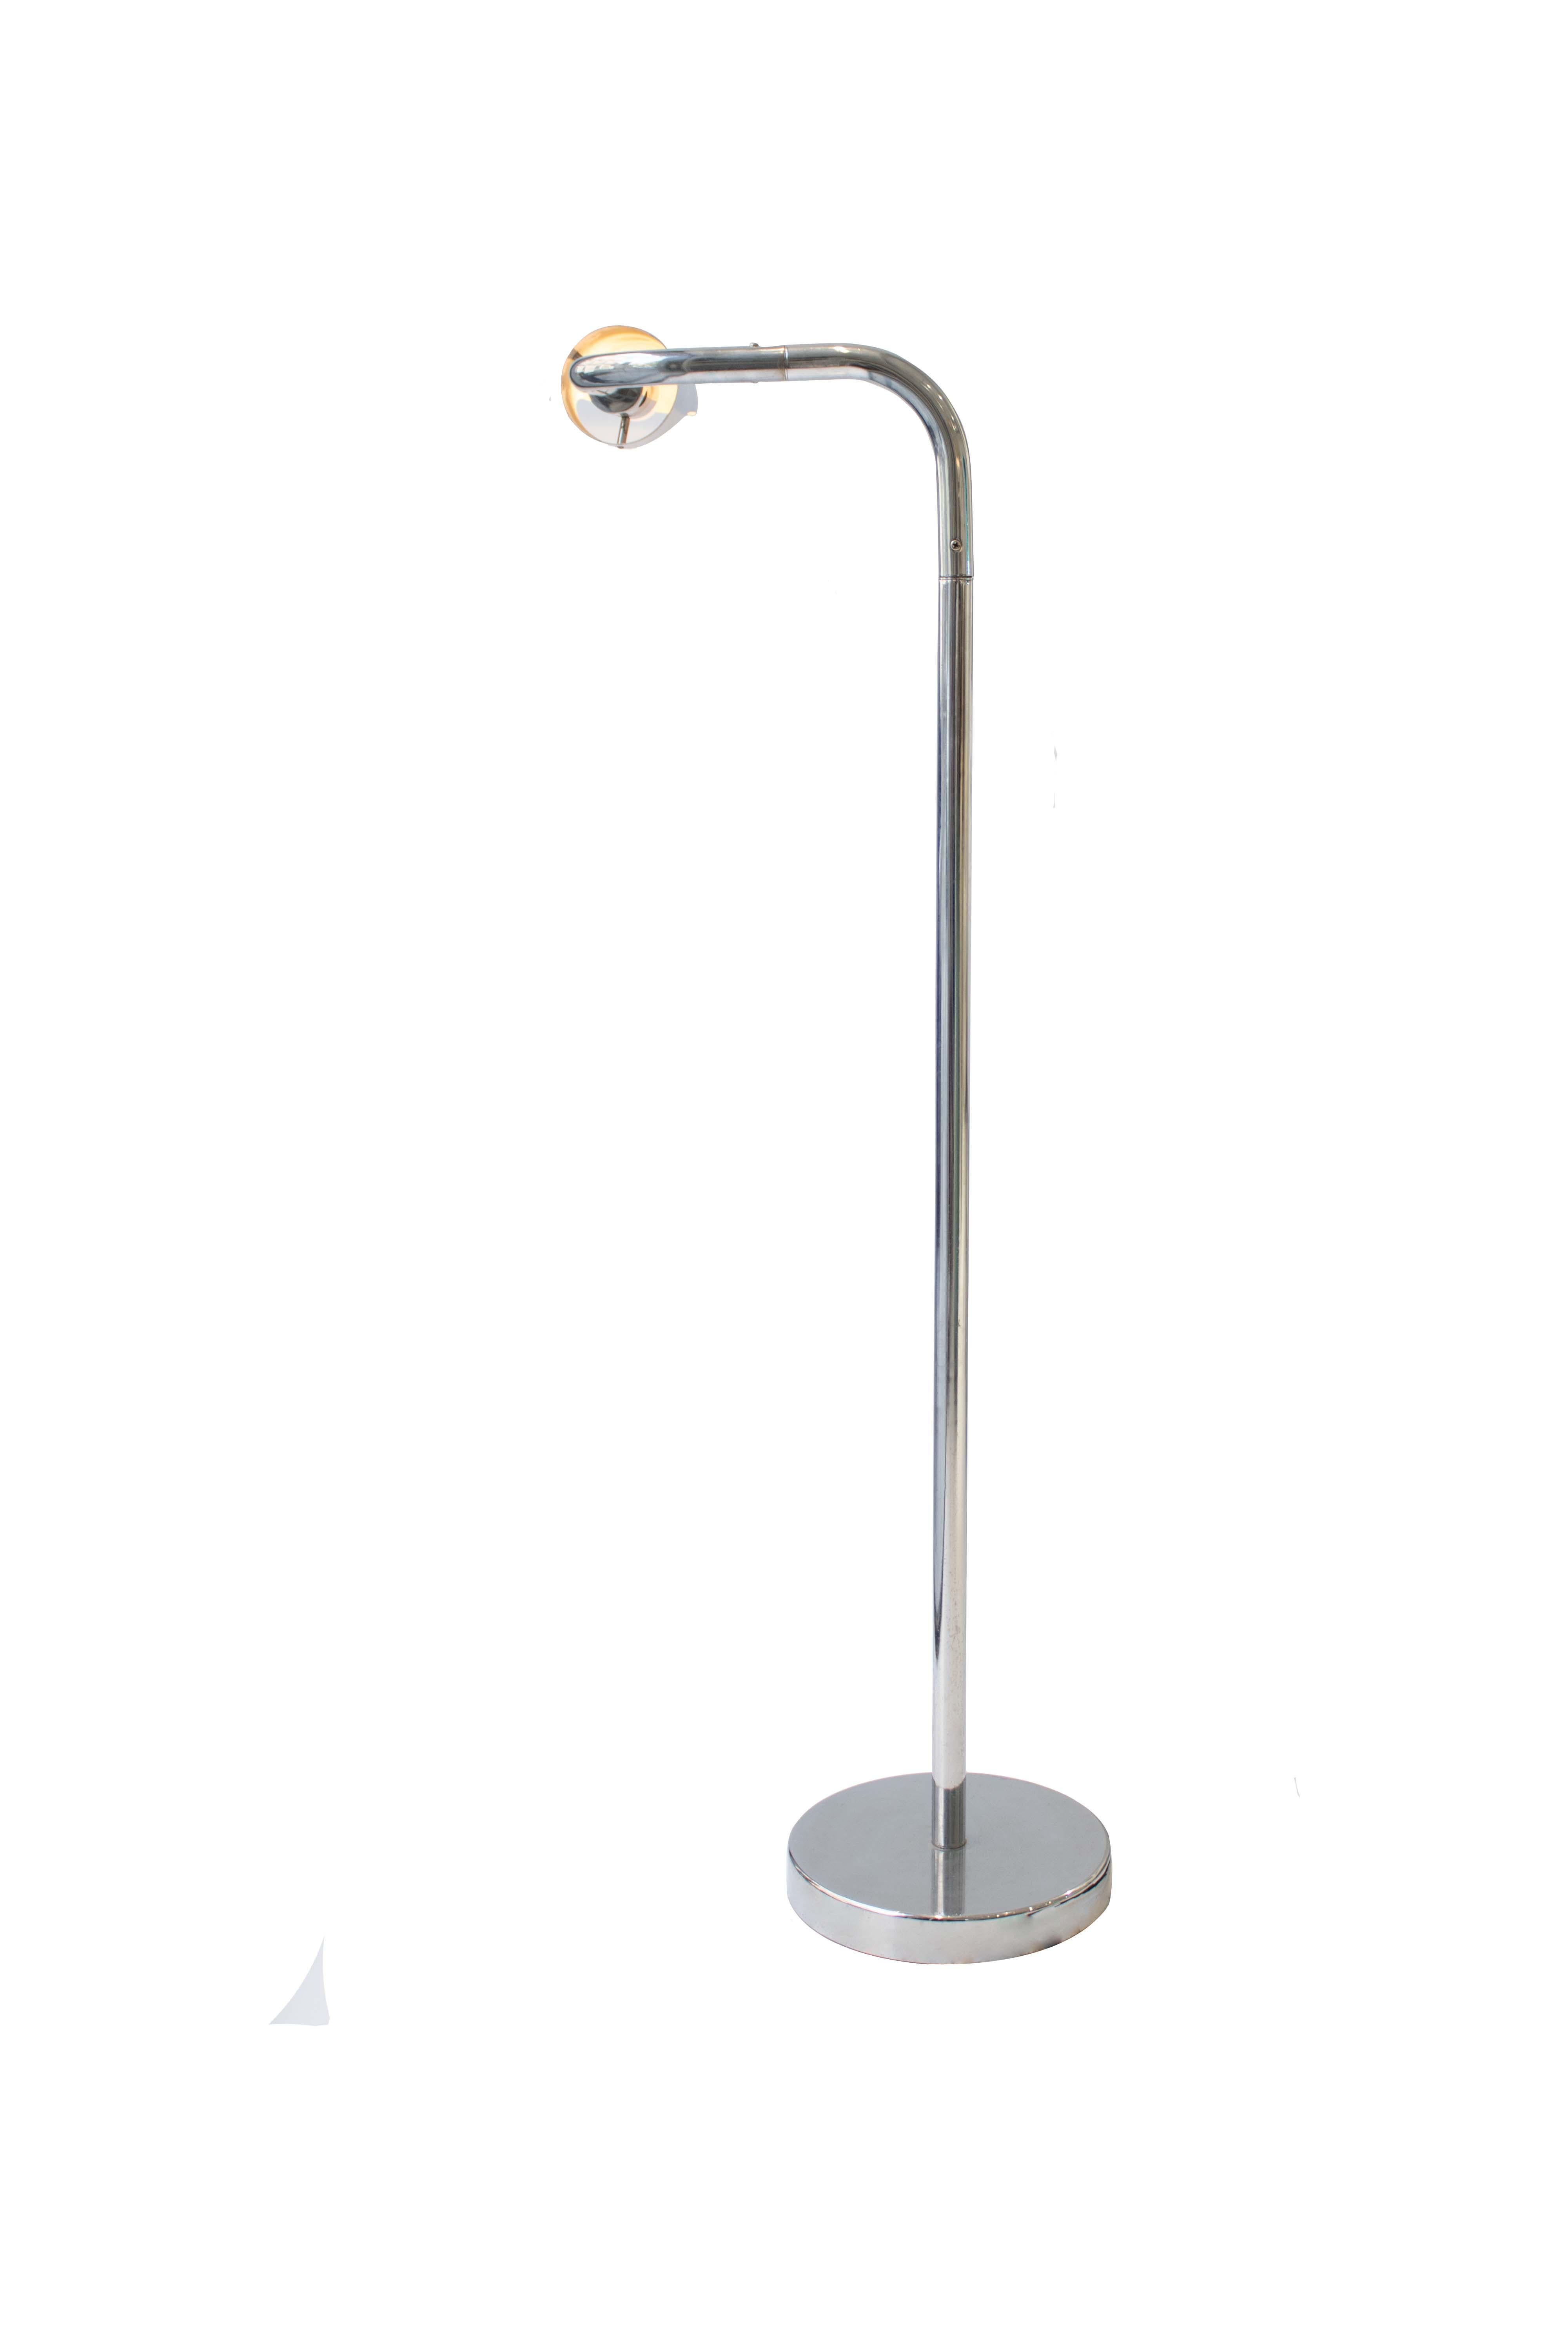 Italienische verchromte Stehlampe aus dem ``Space Age'', den 1960er Jahren.
Er besteht aus einem flachen runden Sockel und einem Rohrfuß. Der Lampenschirm ist mit einem biegsamen, drehbaren Rohr verbunden, das nach oben und unten gekippt werden